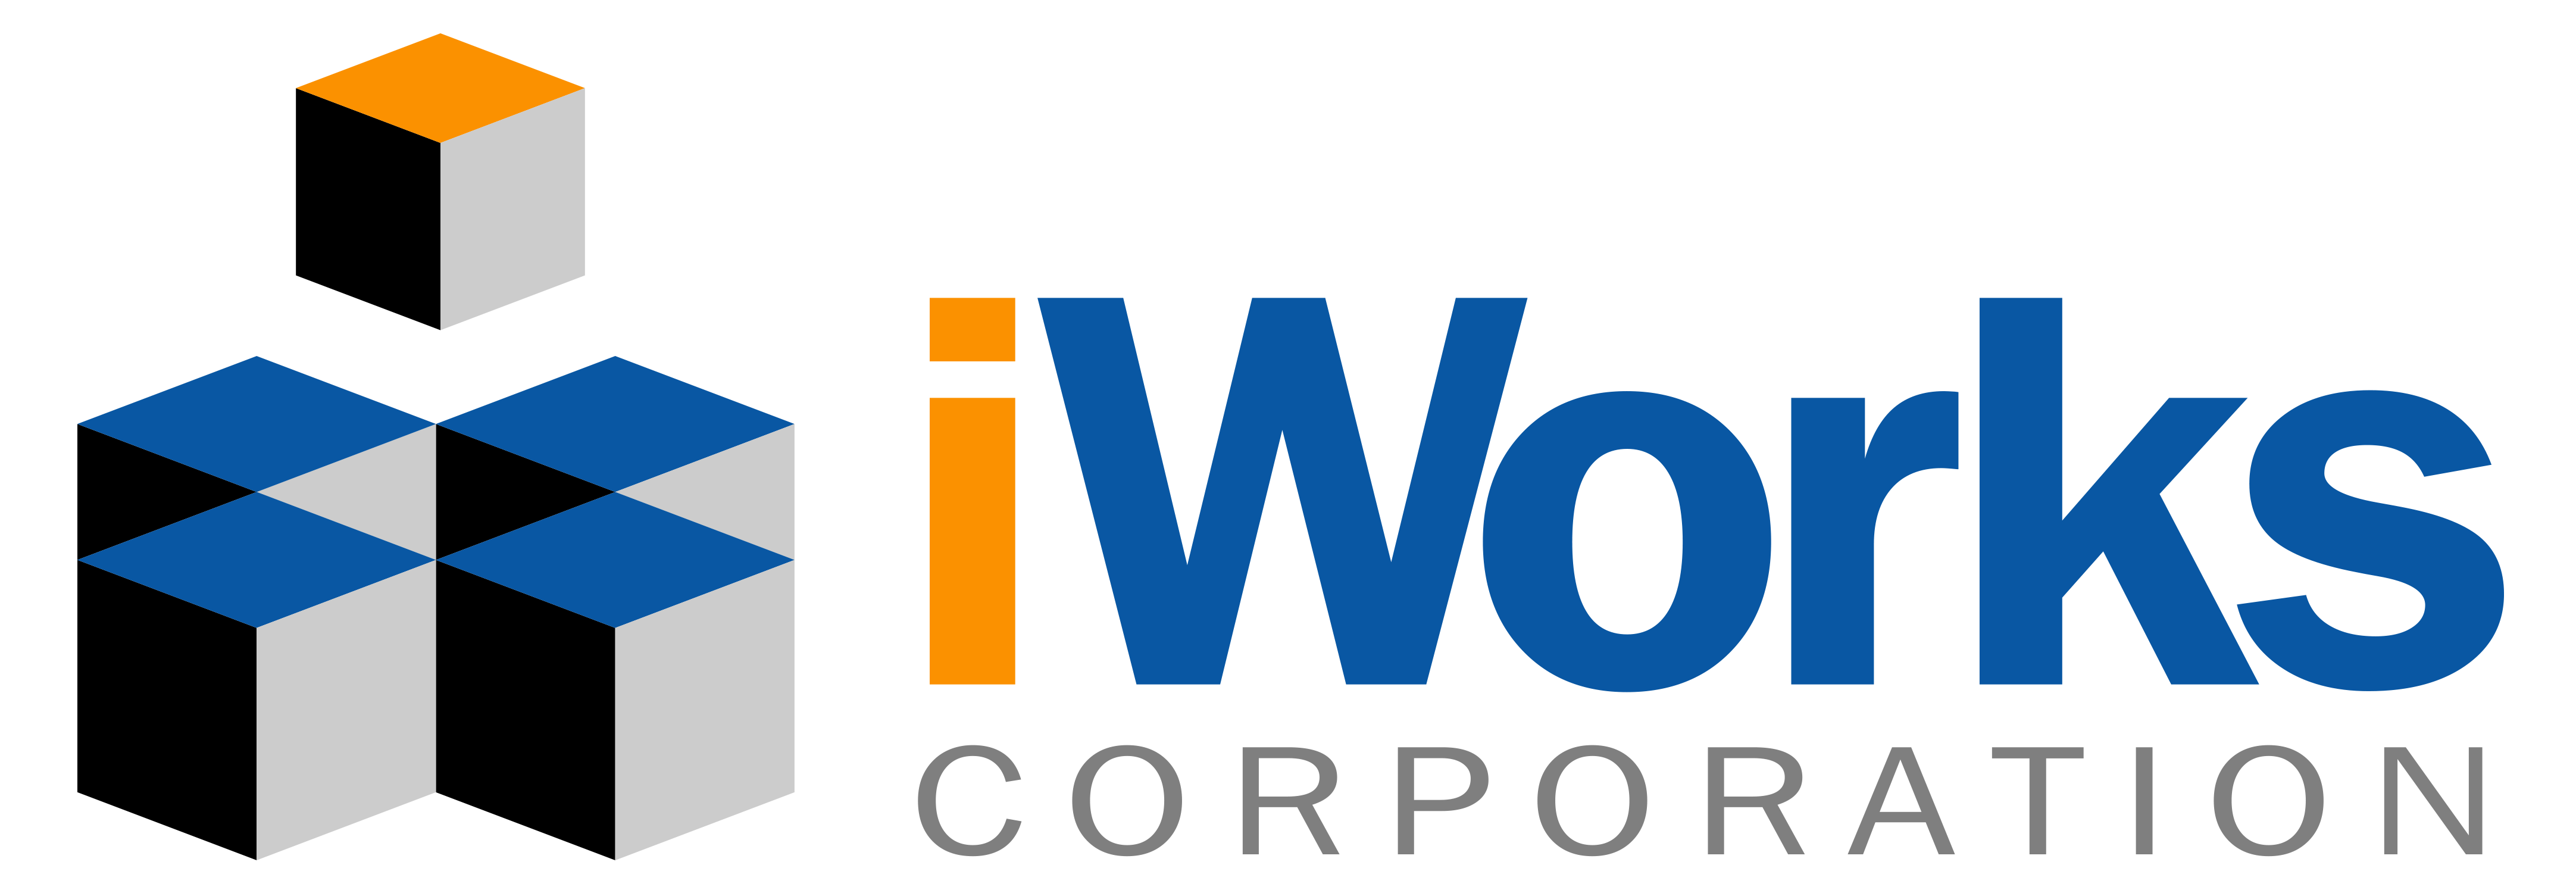 iWorks Corporation logo